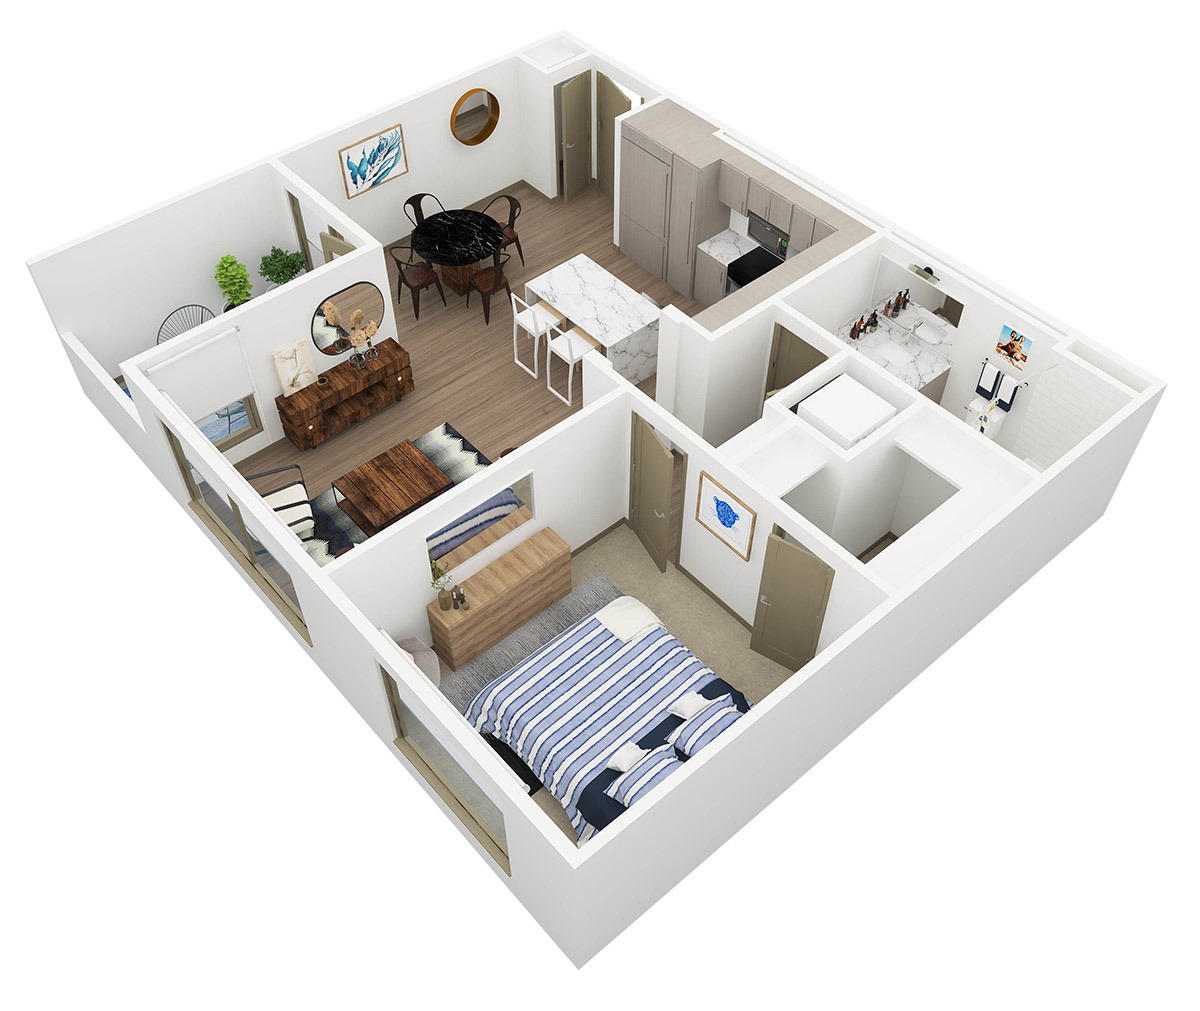 Persea 1 Bedroom Floor Plan - A1 - 1